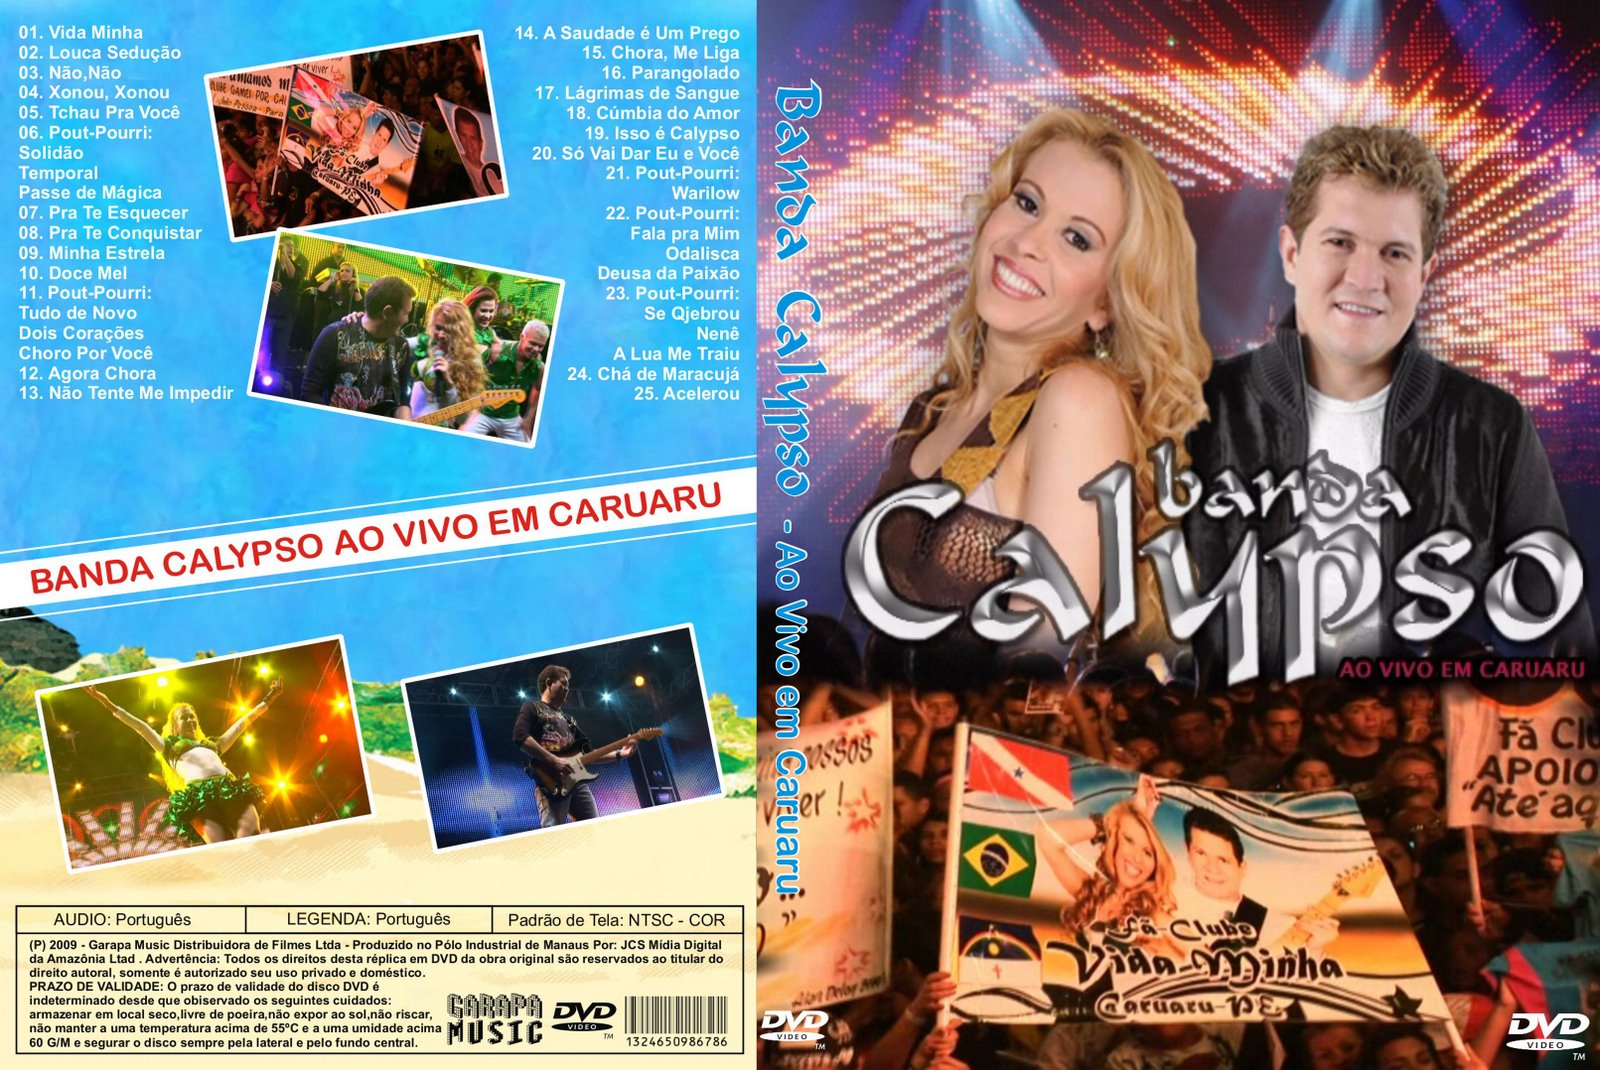 Resultado de imagem para Banda Calypso - Ao Vivo em Caruaru 2009